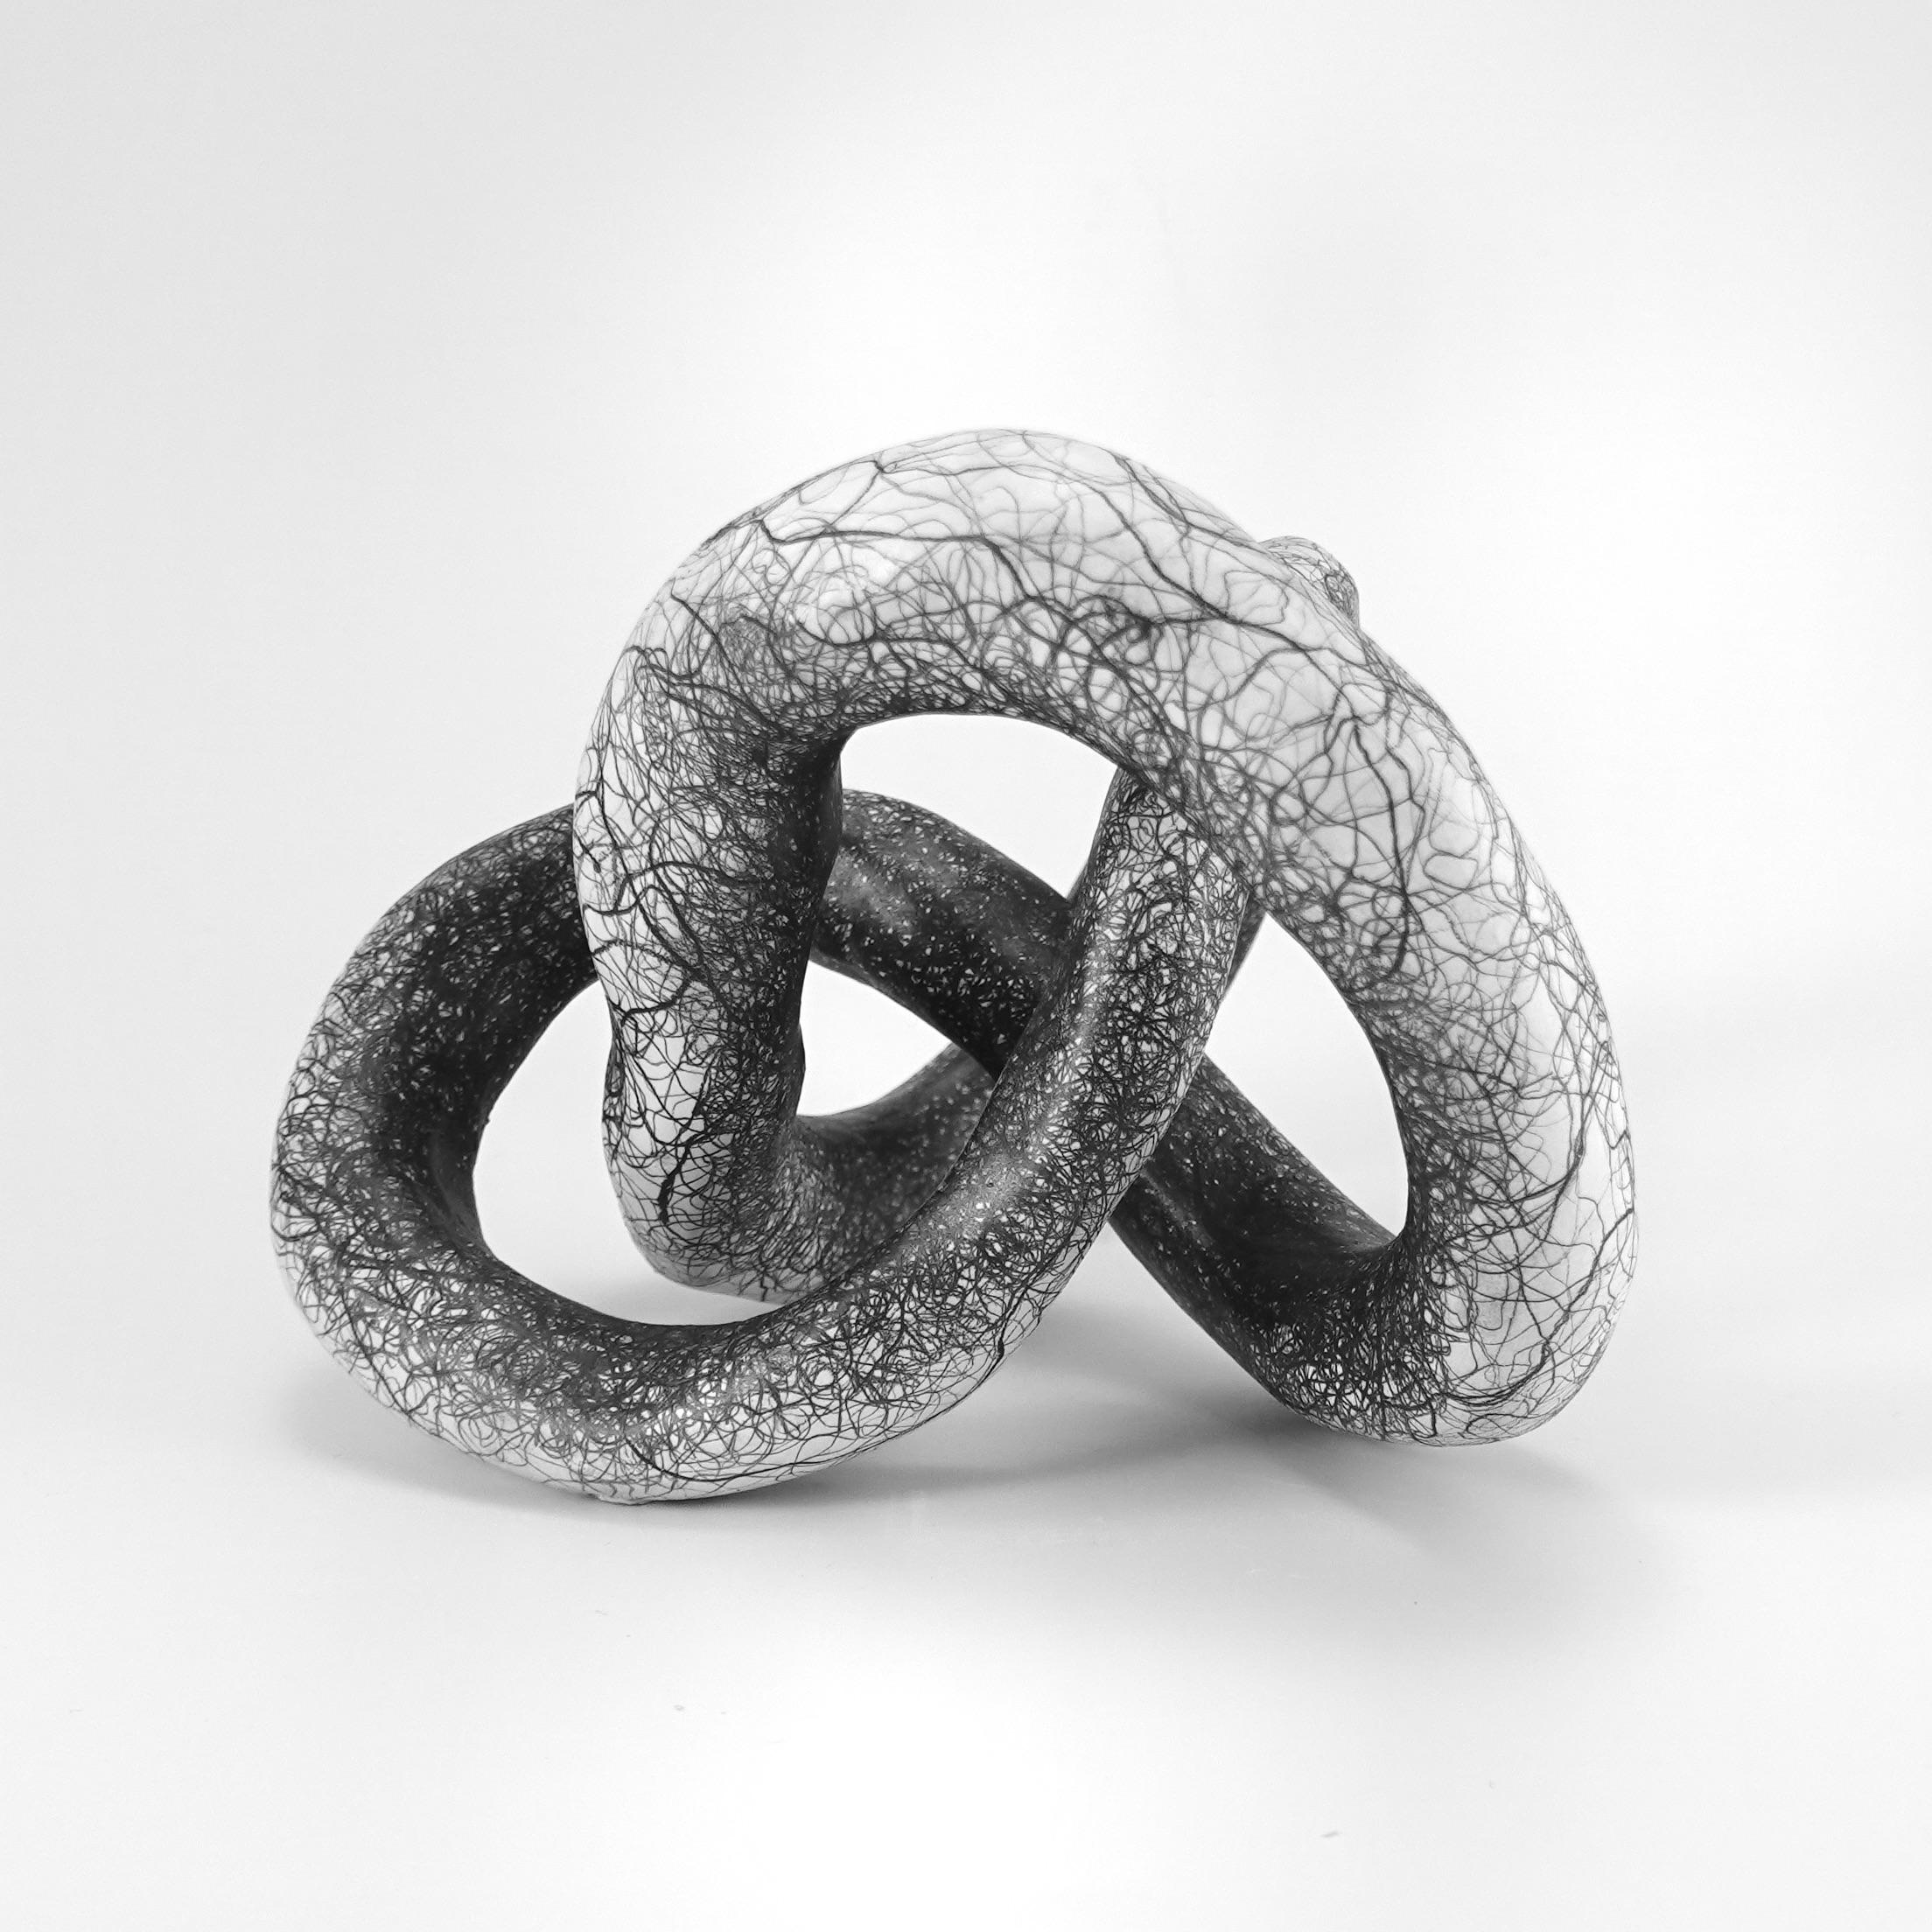 Sculpture abstraite minimale en noir et blanc : 